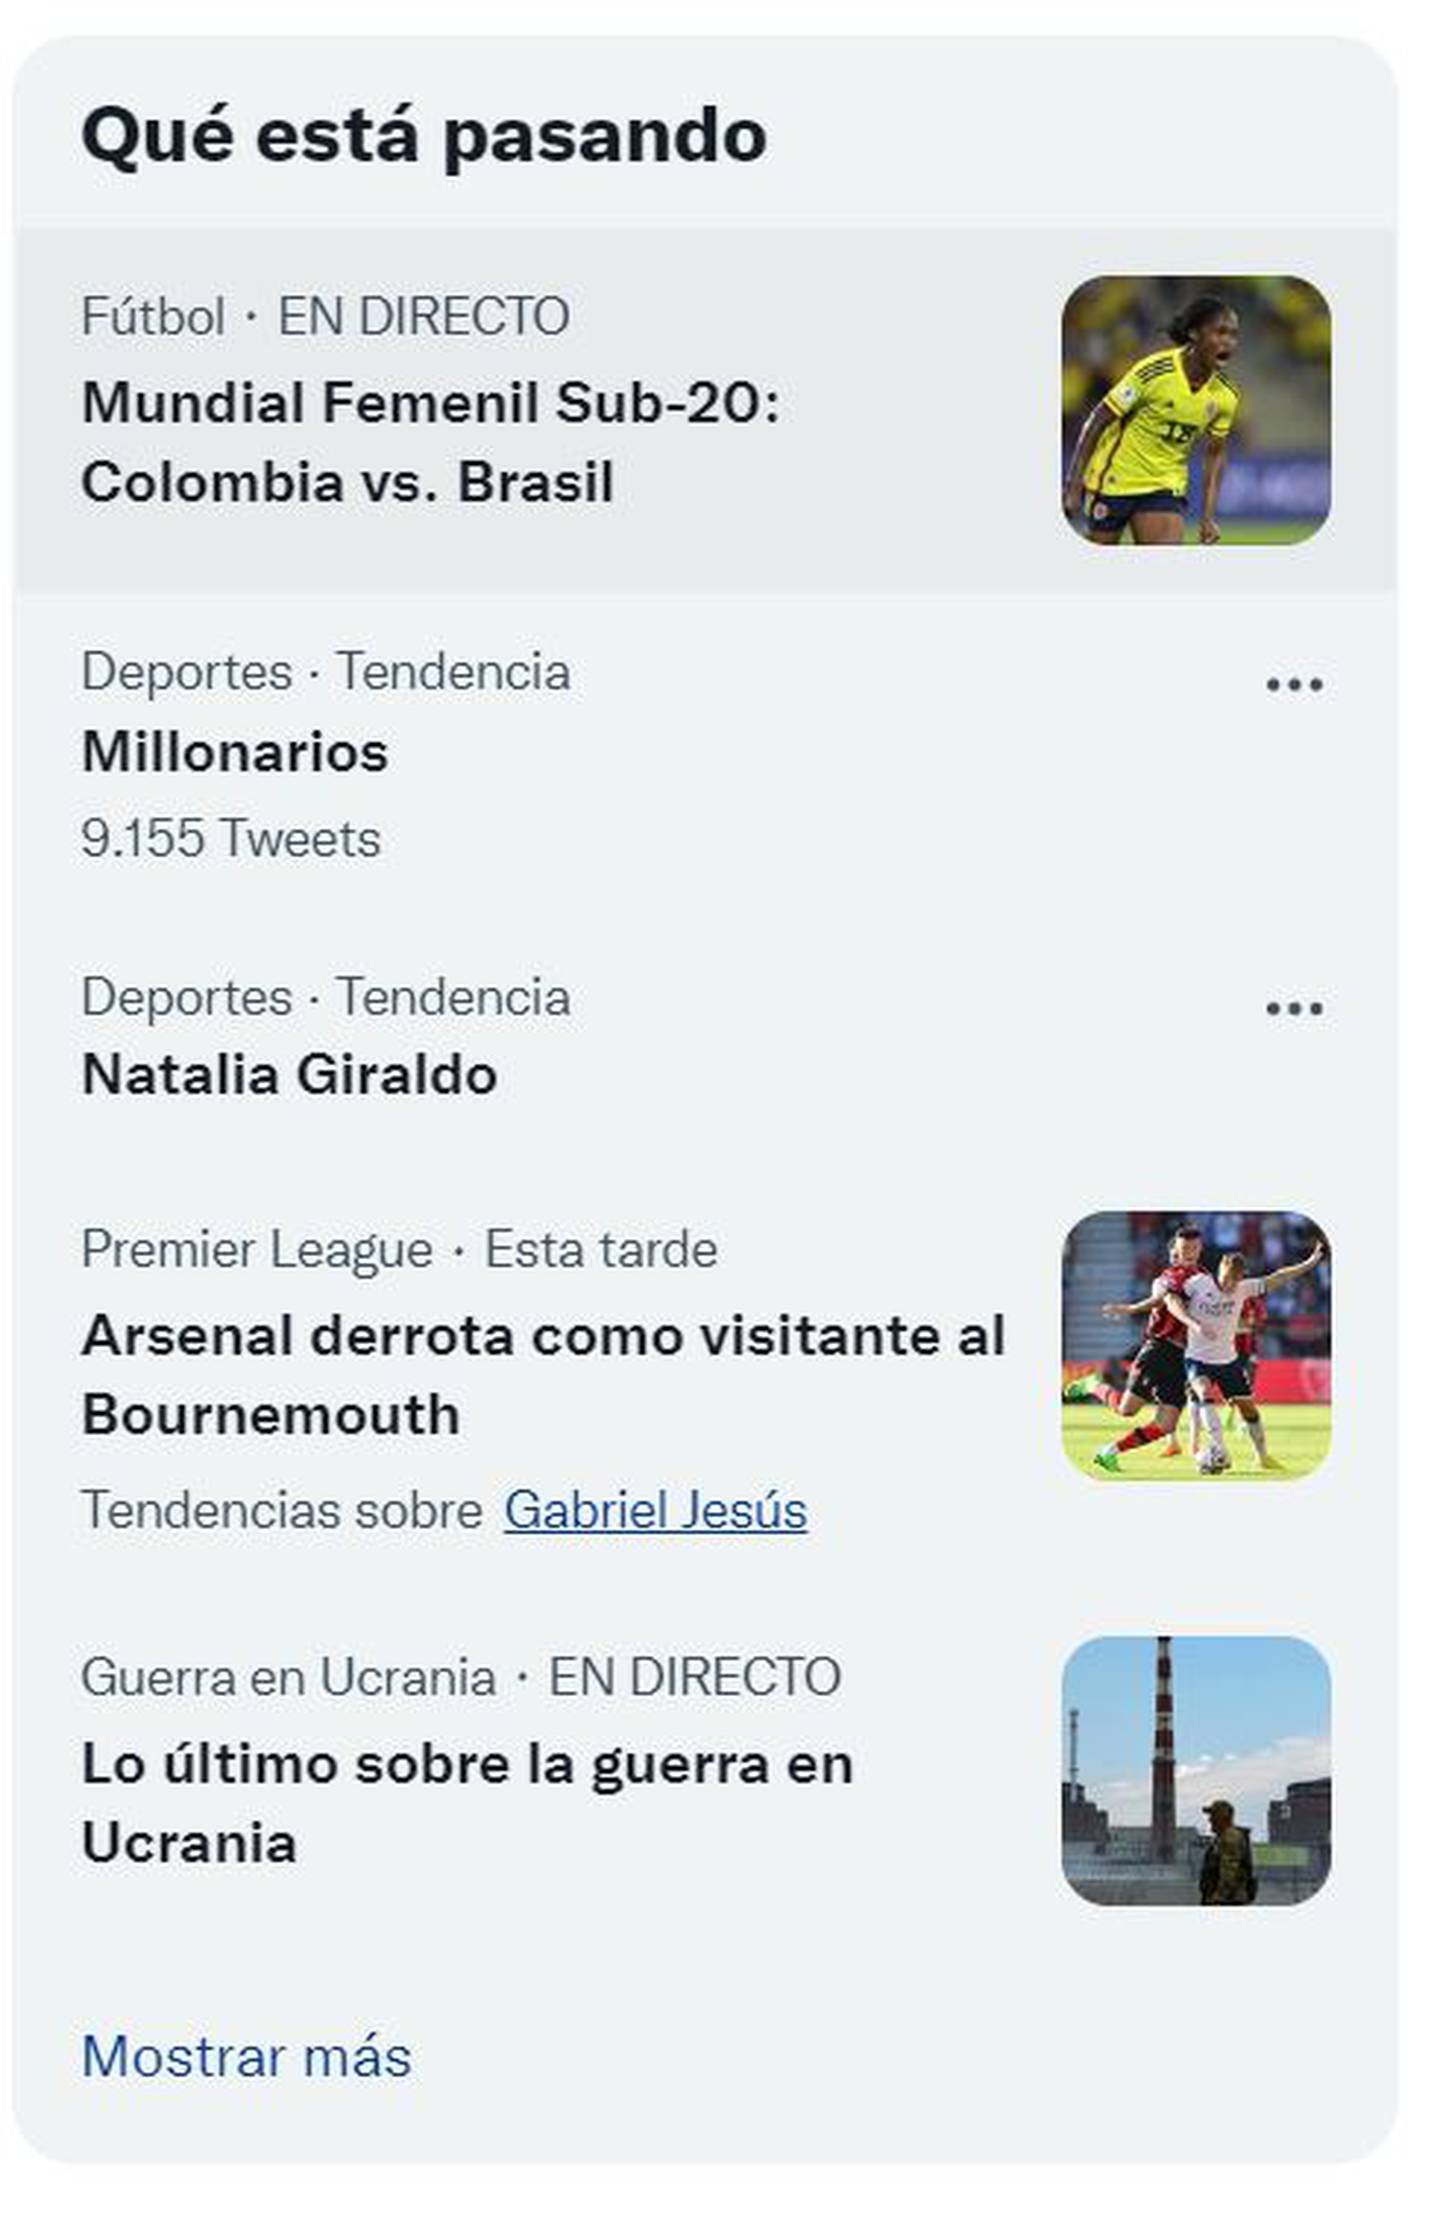 Natalia Giraldo fue tendencia en Twitter durante el partido contra Brasil